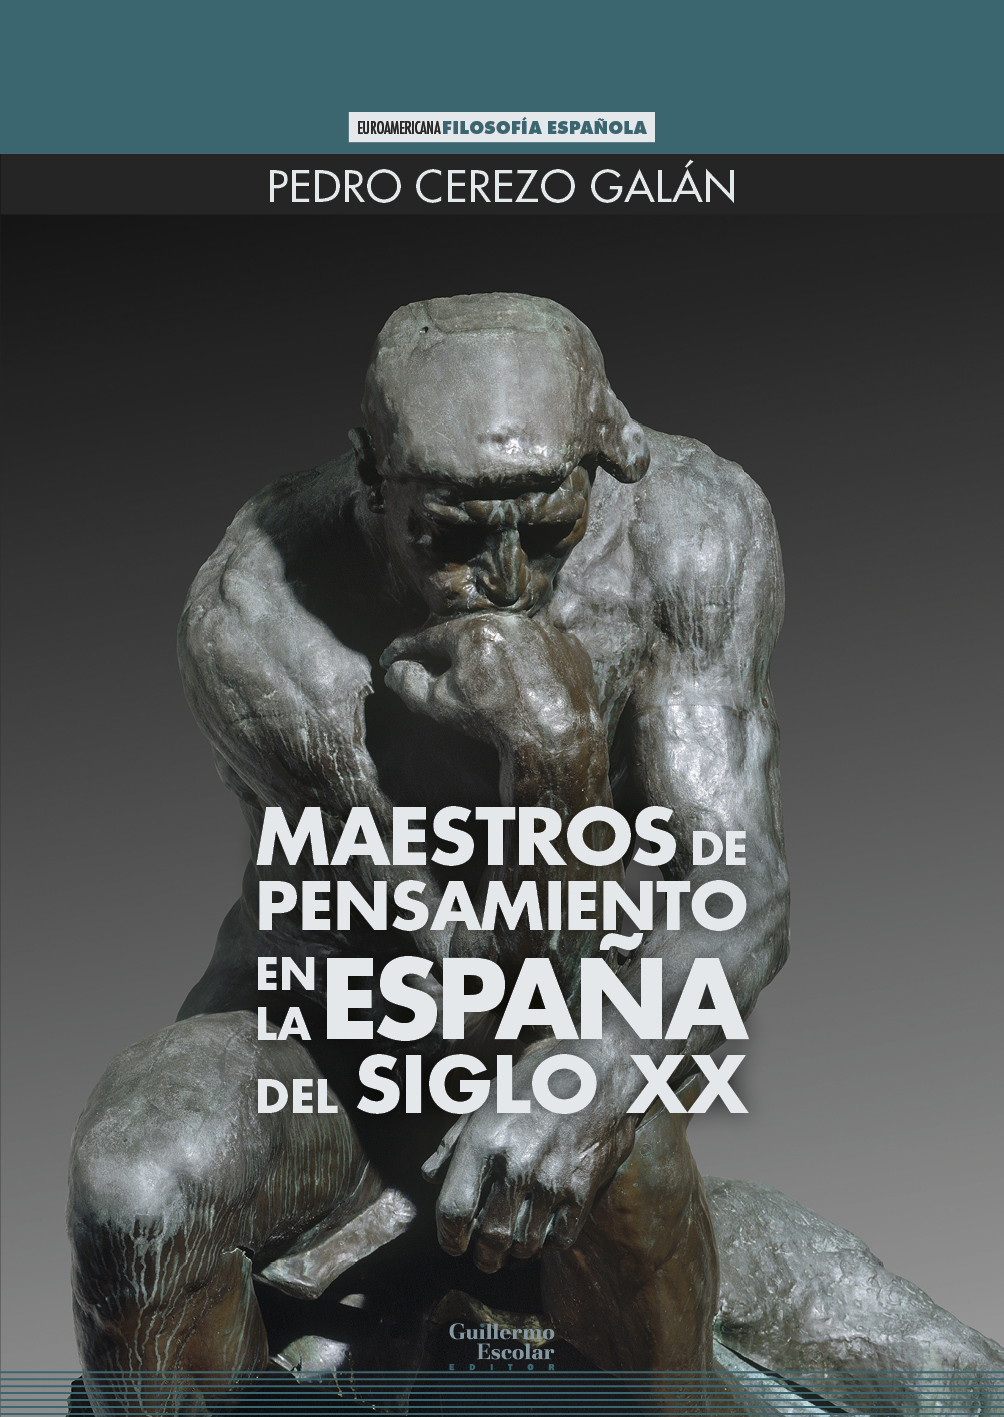 Imagen de portada del libro Maestros de pensamiento en la España del siglo XX